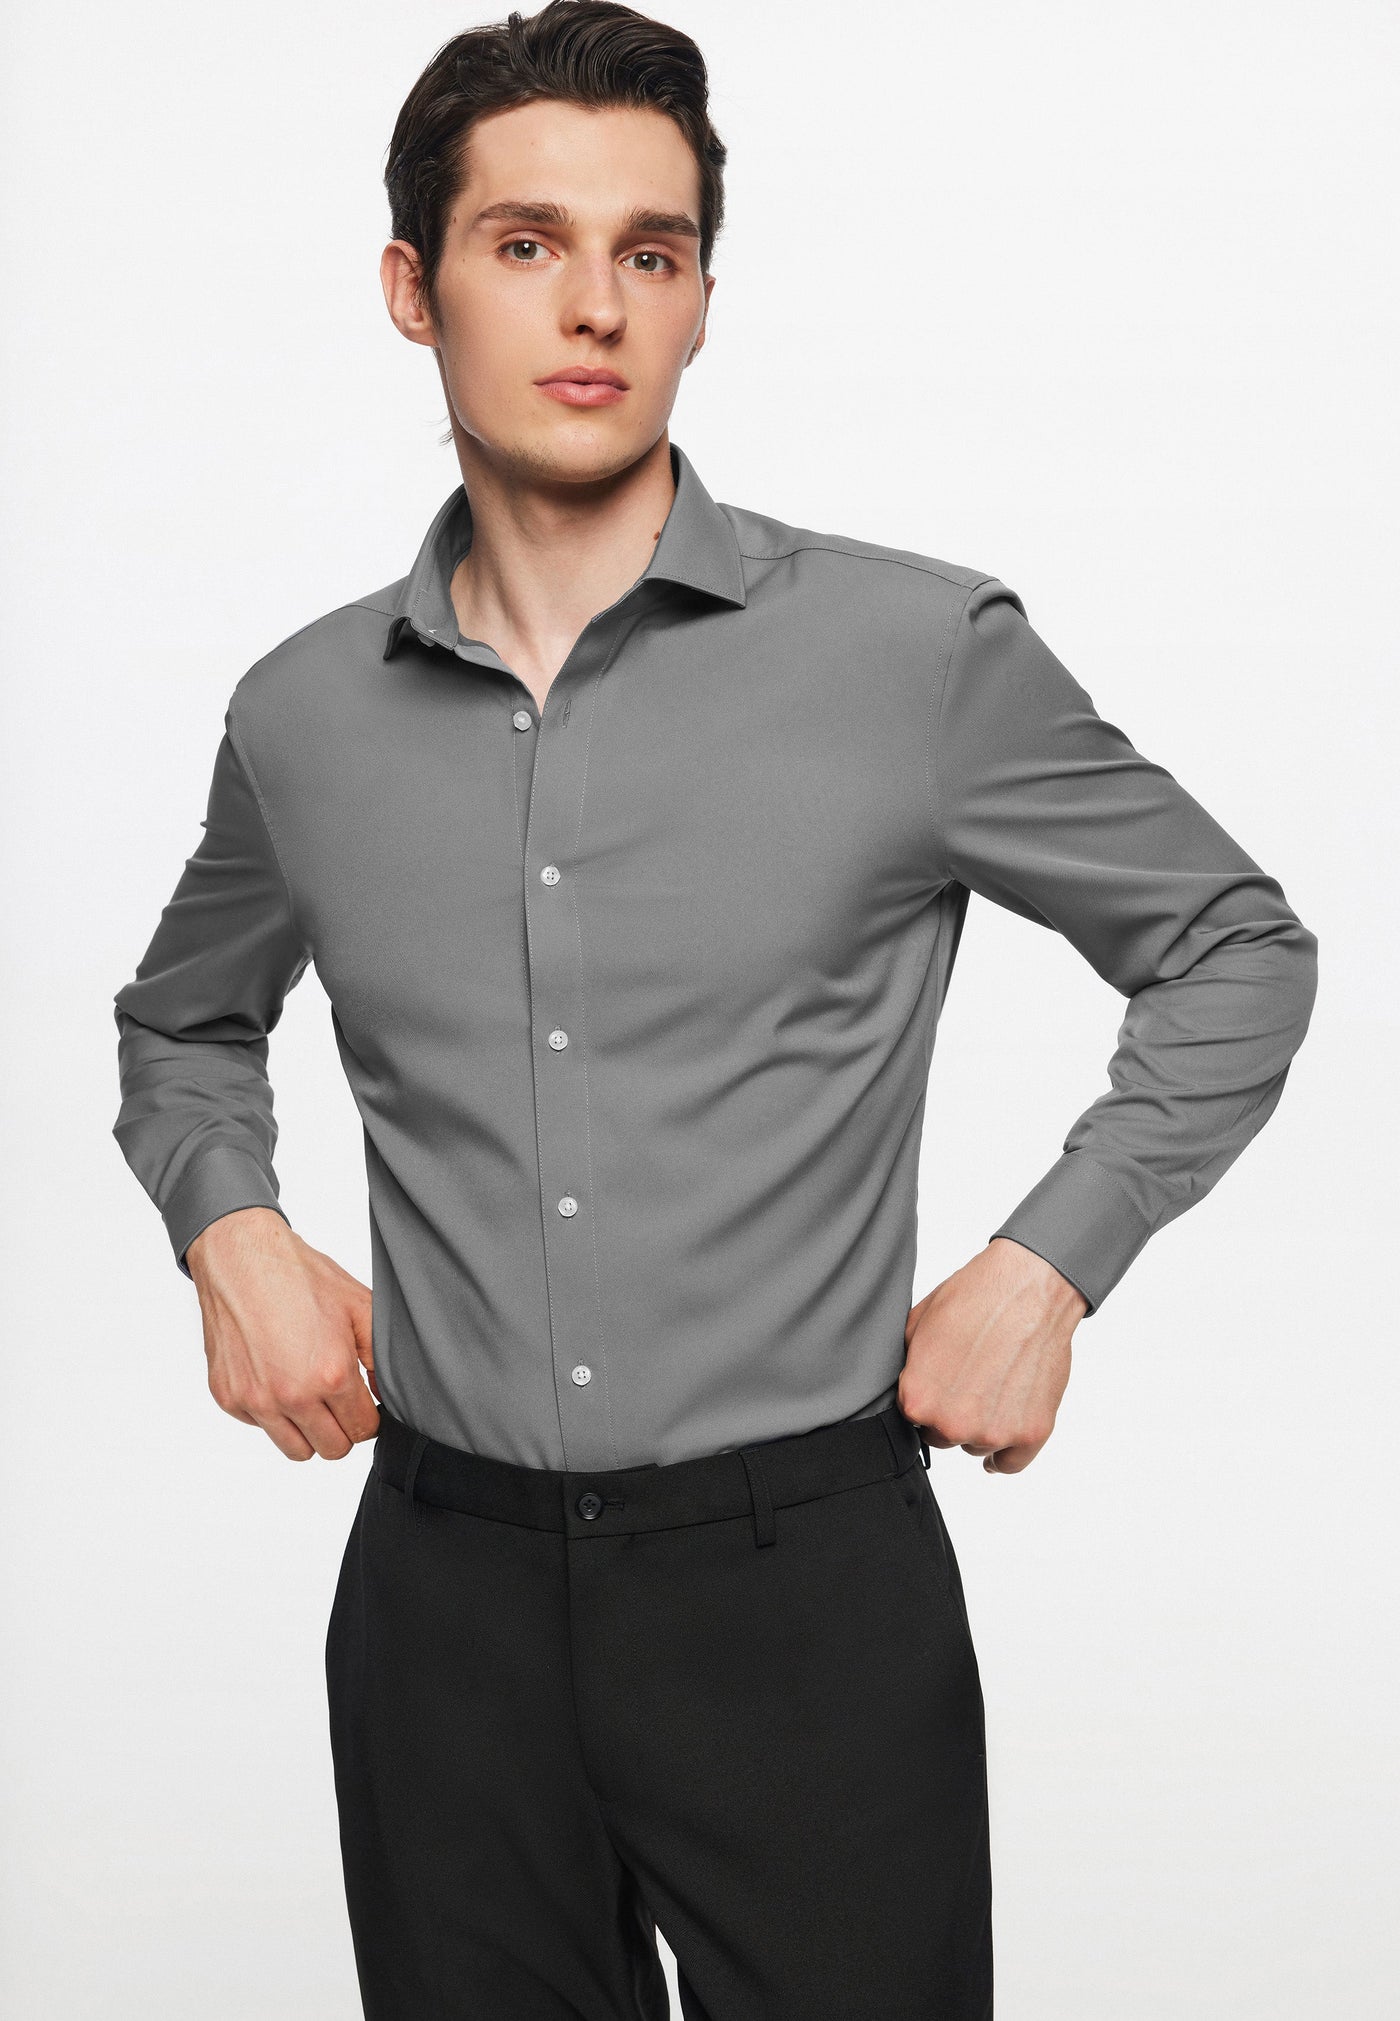 เสื้อเชิ้ตแขนยาวแบบทางการสำหรับผู้ชาย - Smart Fit